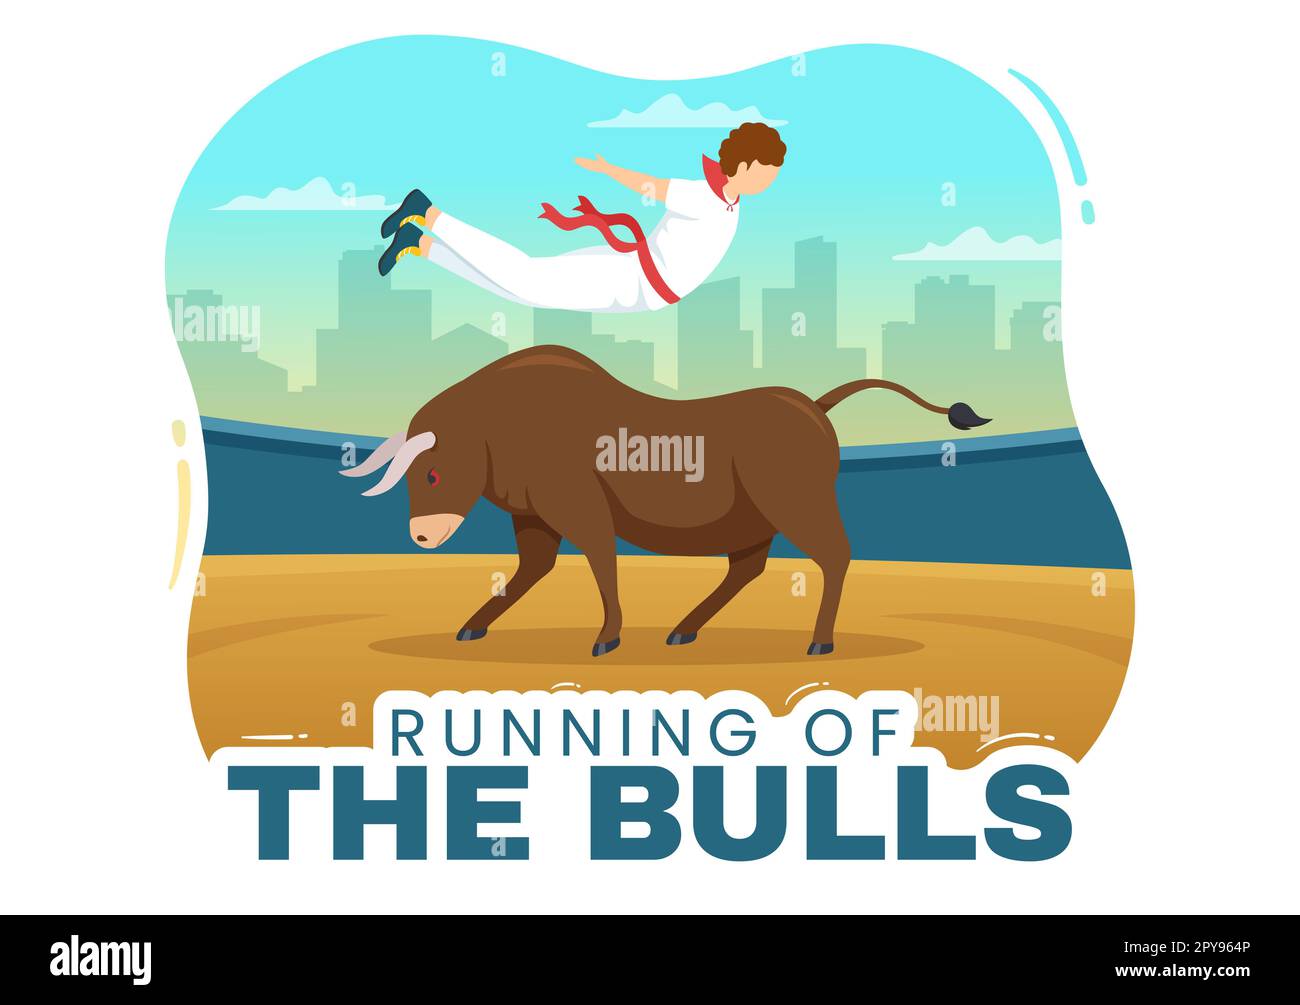 Esecuzione delle Bulls Illustration con Bullfighting Show in Arena in Cartoon piatto disegnato a mano per banner Web o Landing Page Template Foto Stock